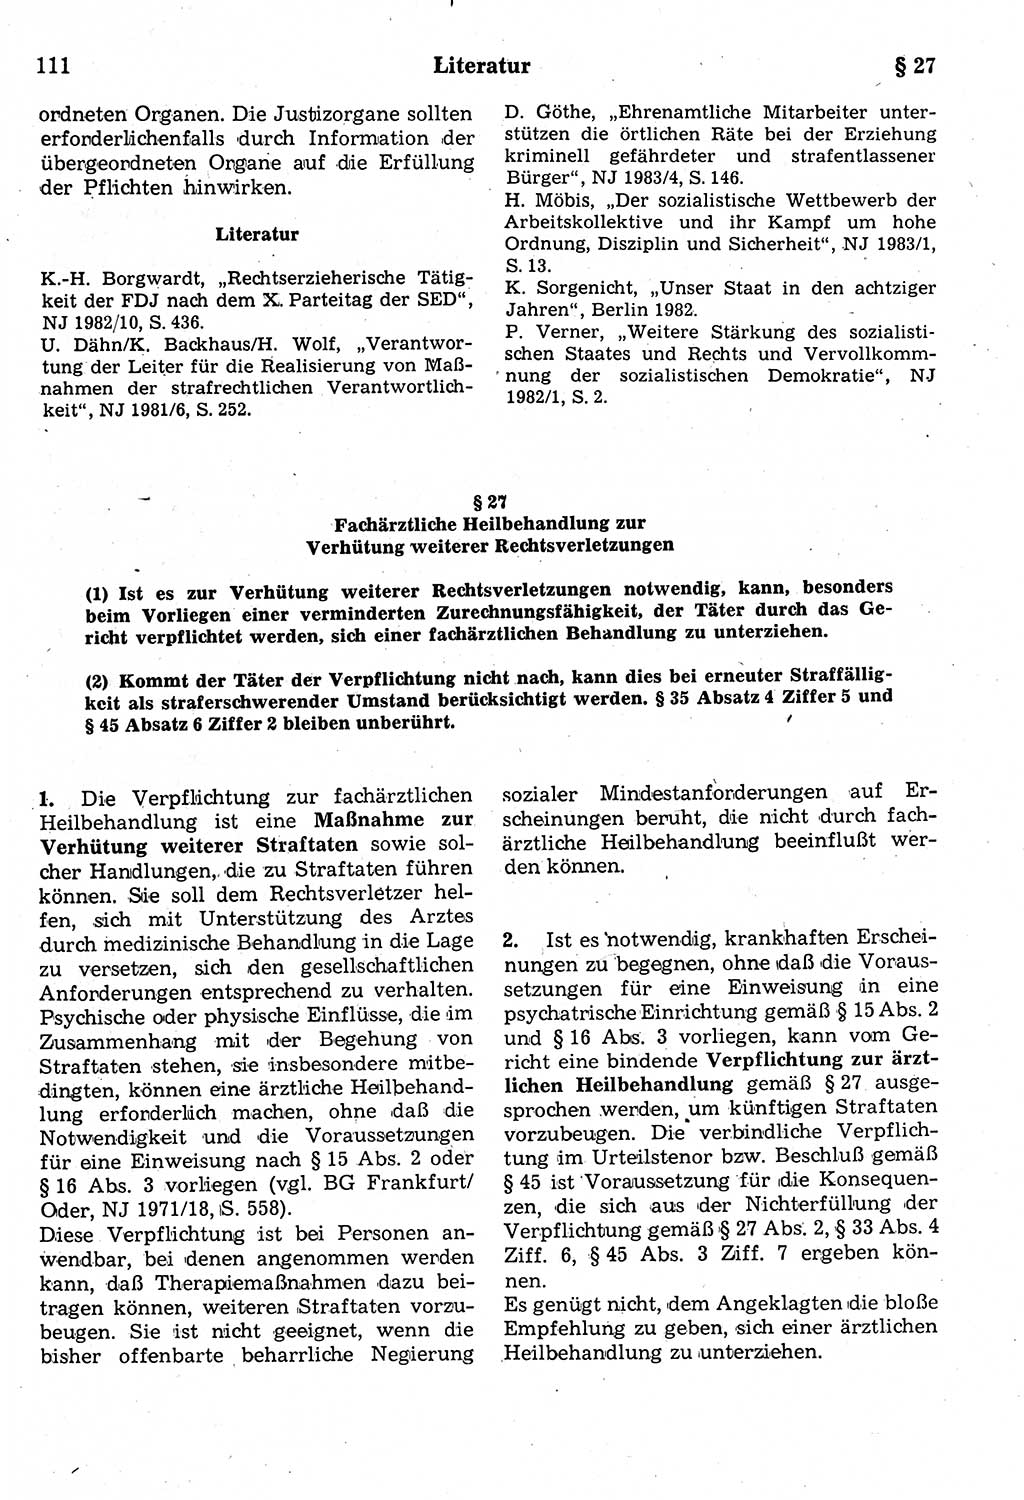 Strafrecht der Deutschen Demokratischen Republik (DDR), Kommentar zum Strafgesetzbuch (StGB) 1987, Seite 111 (Strafr. DDR Komm. StGB 1987, S. 111)